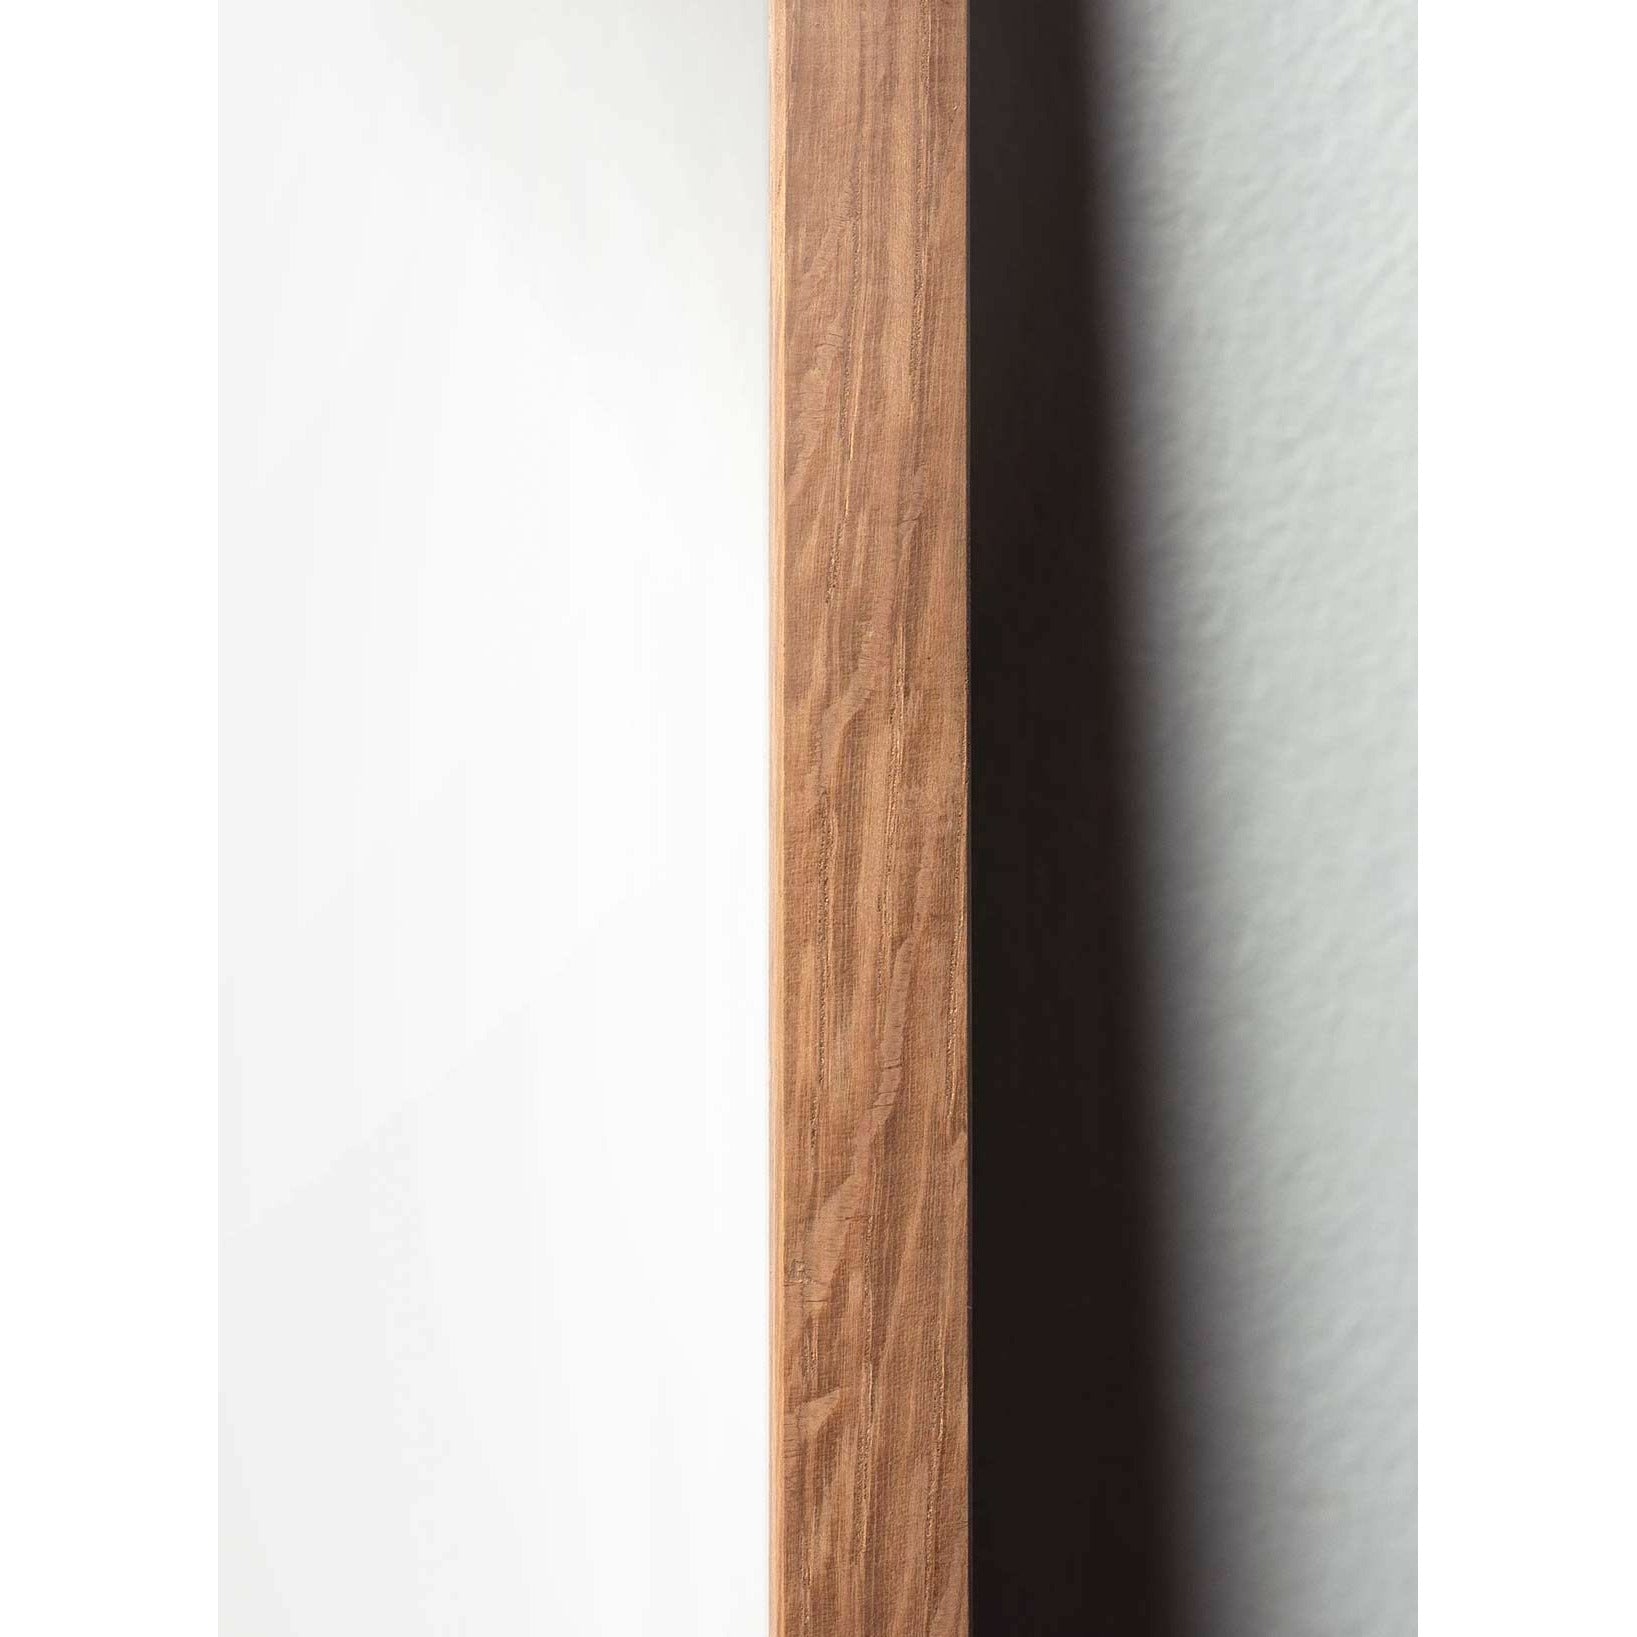 Brainchild Eierlijnposter, frame in licht hout 30x40 cm, witte achtergrond